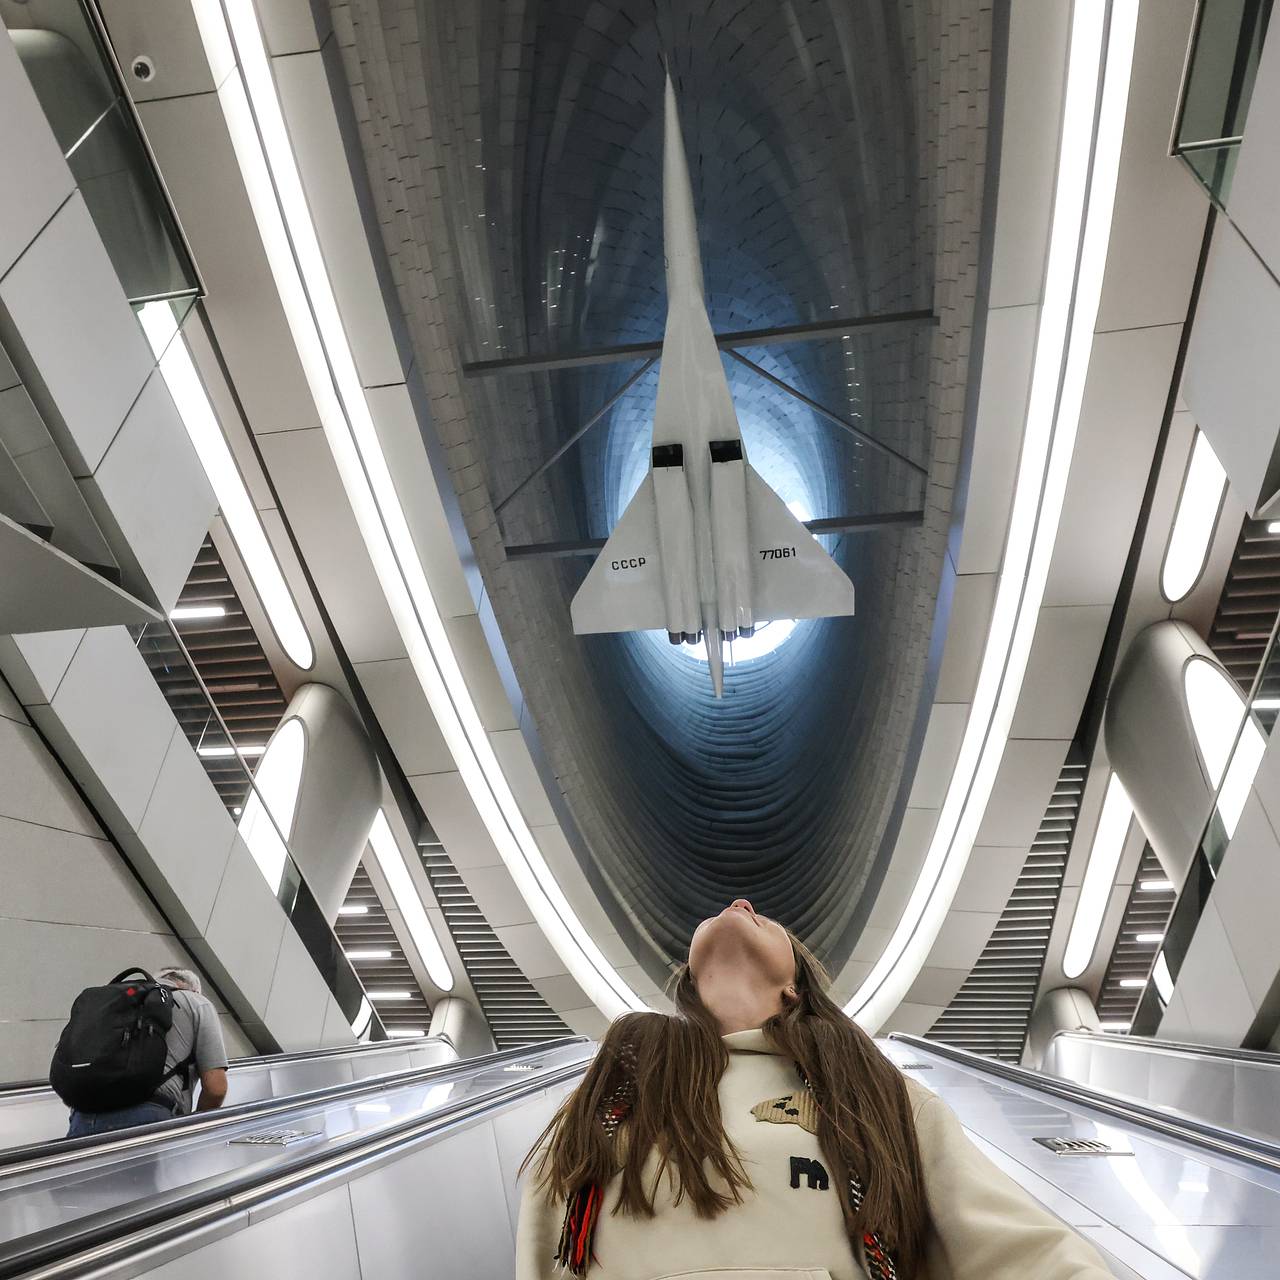 Копию Ту-144 на новой станции метро в Москве изготовили как настоящий  самолет: Транспорт: Среда обитания: Lenta.ru